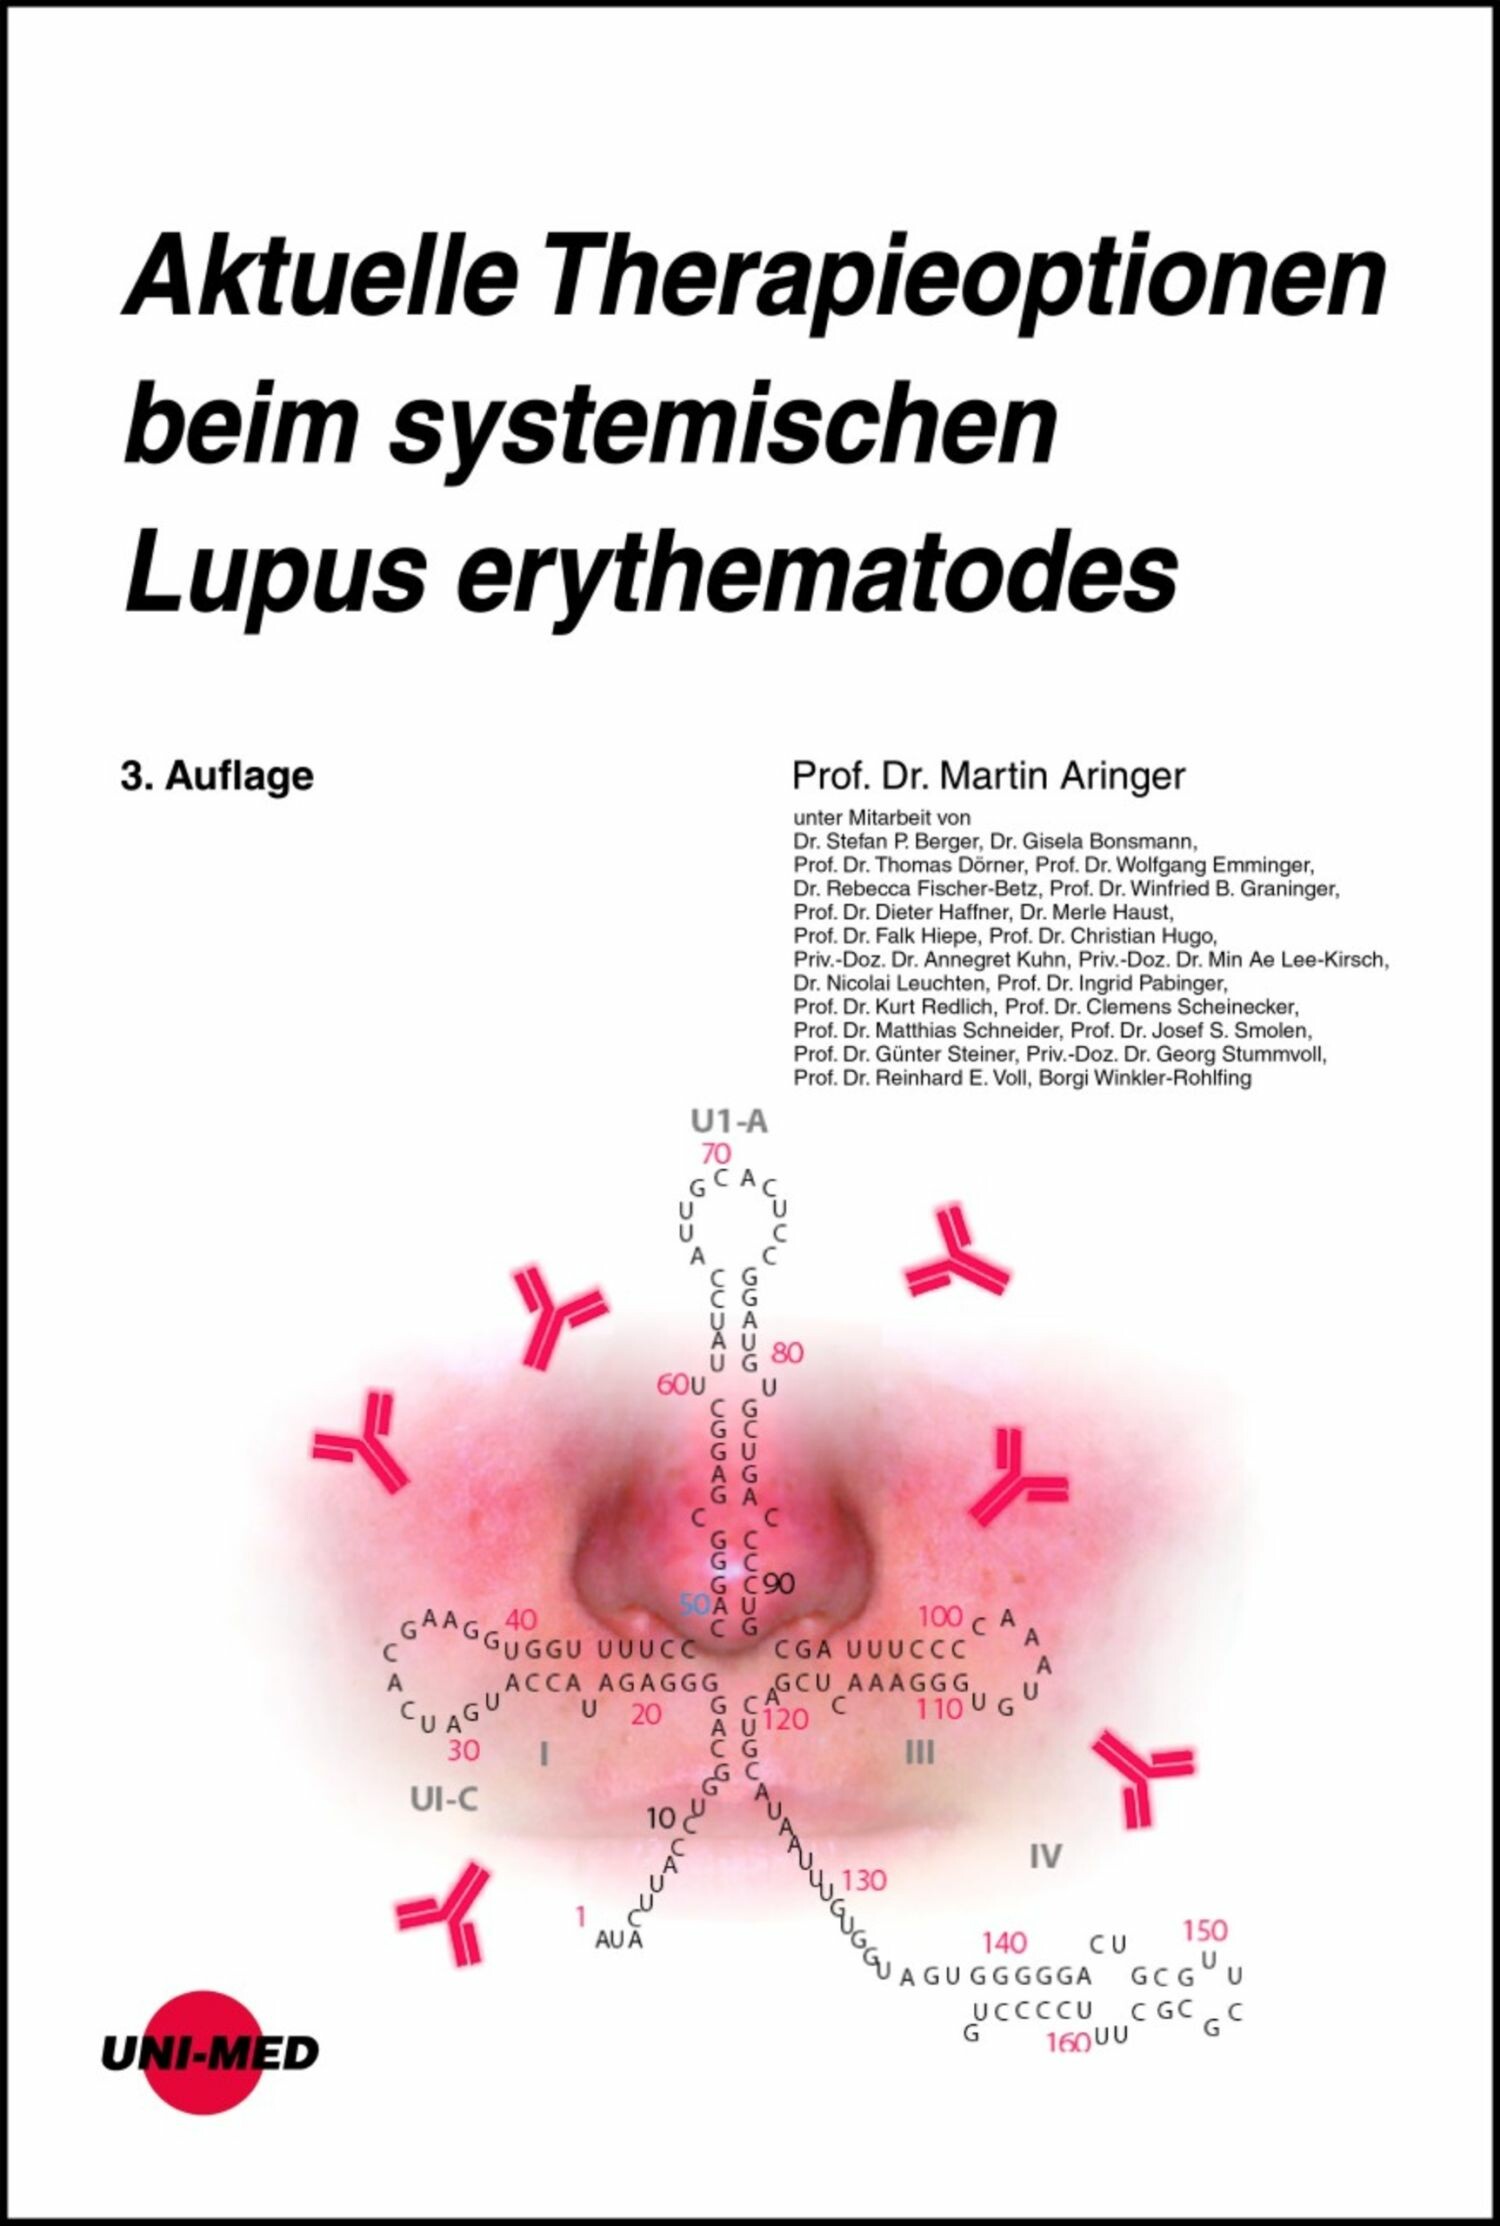 Aktuelle Therapieoptionen beim systemischen Lupus erythematodes